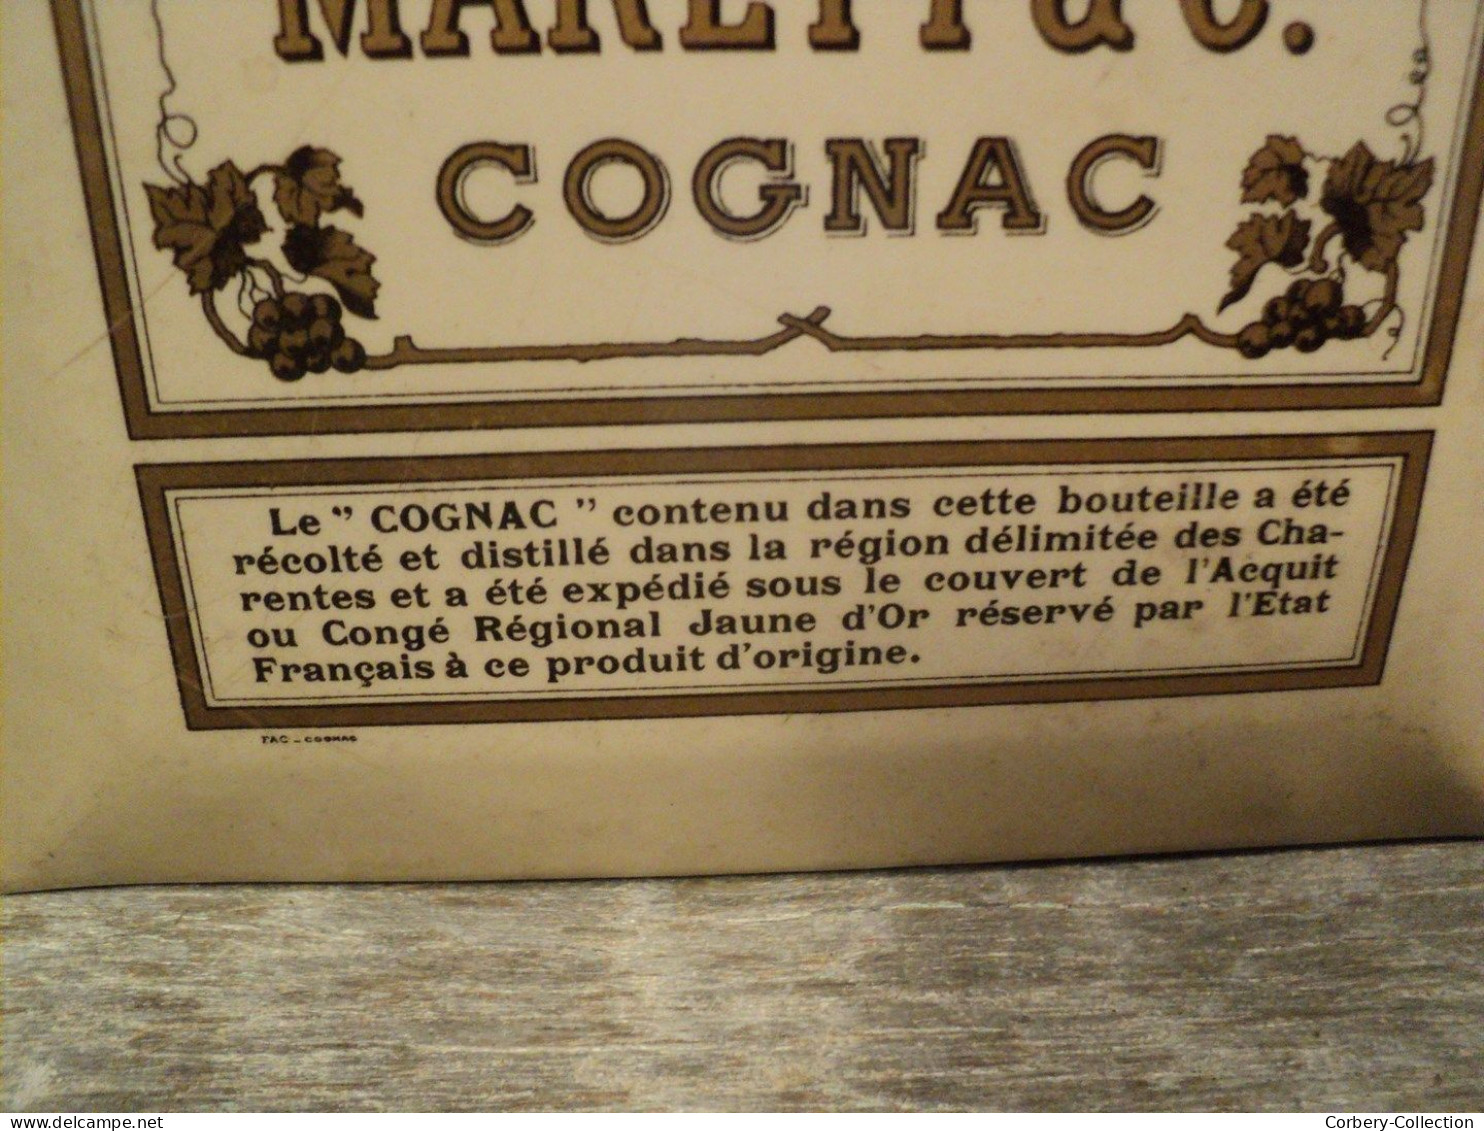 Glacoïde Publicitaire Cognac Marett & Co Fondée En 1822. - Pappschilder